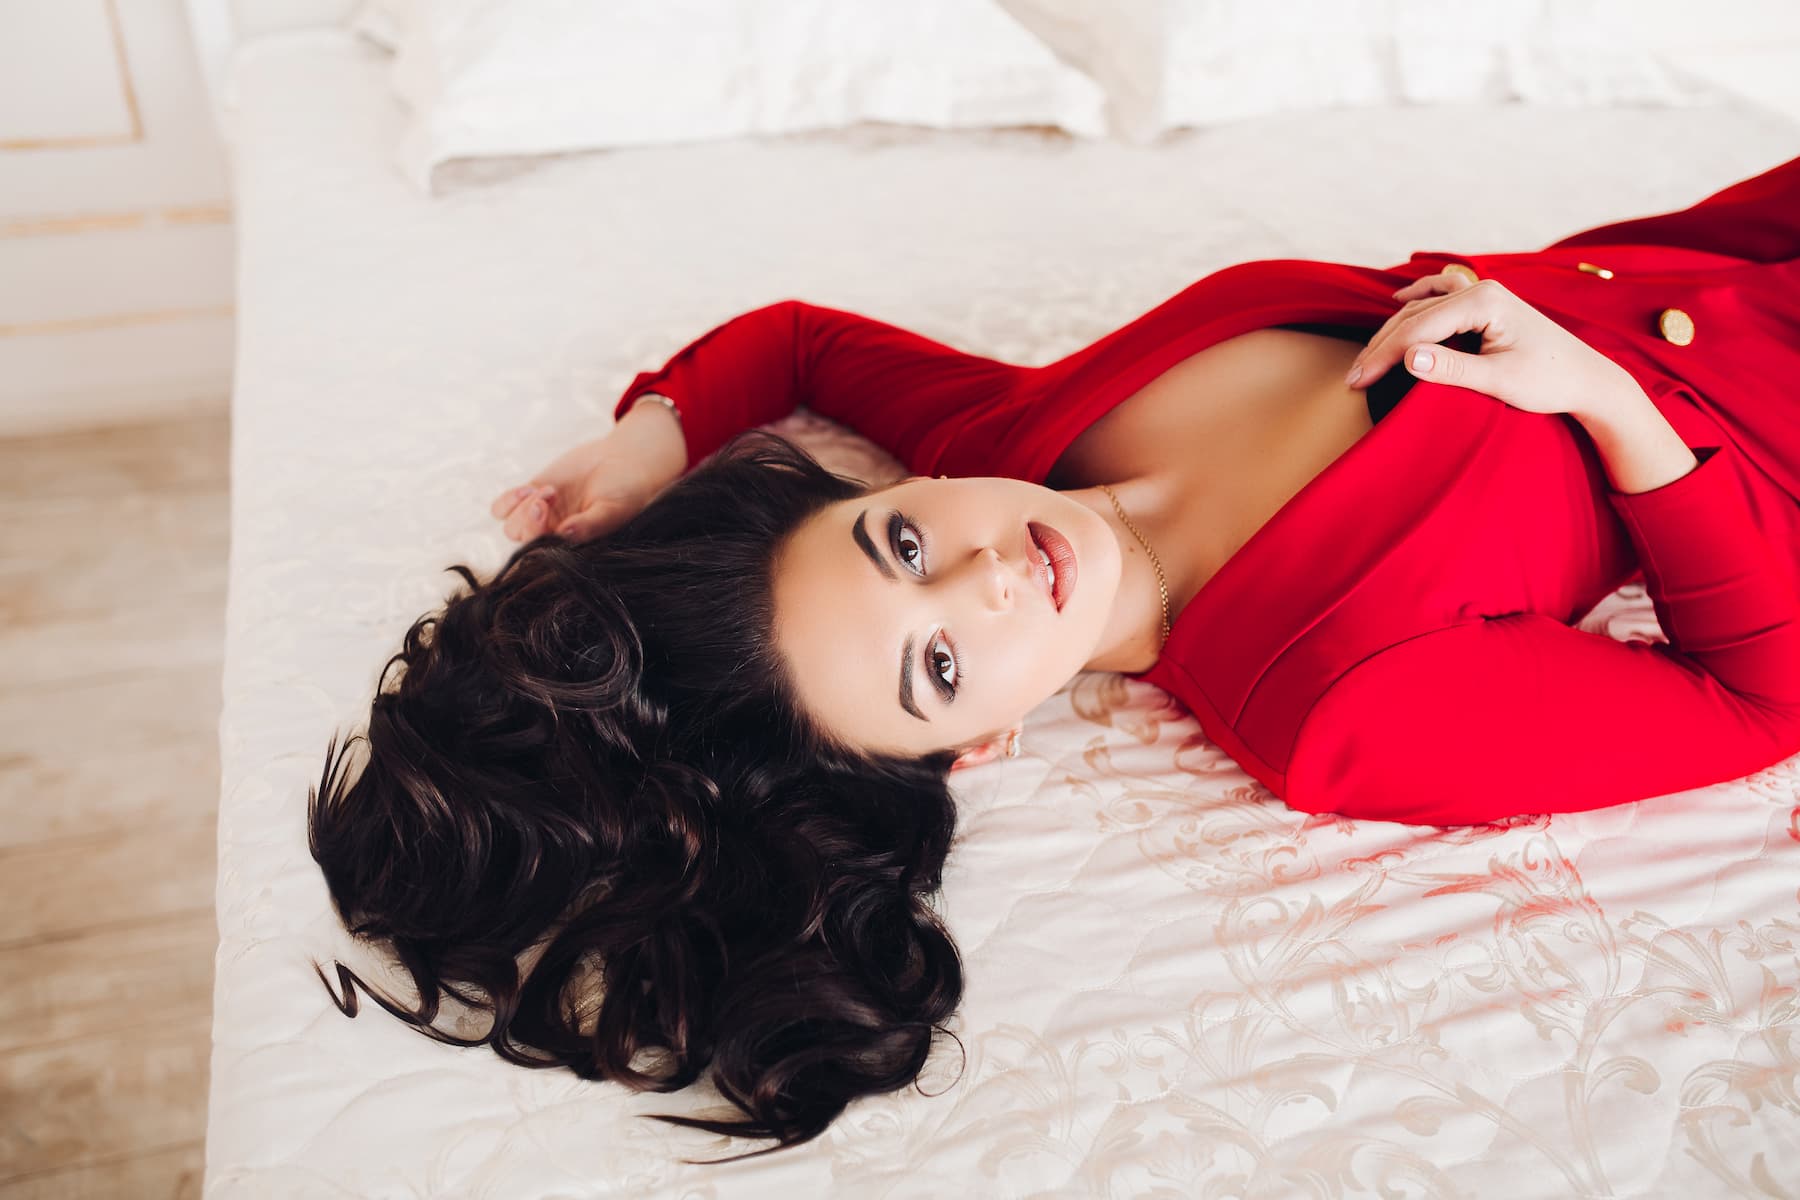 Ragazza sexy in abito rosso sdraiata sul letto con gli occhi marroni.